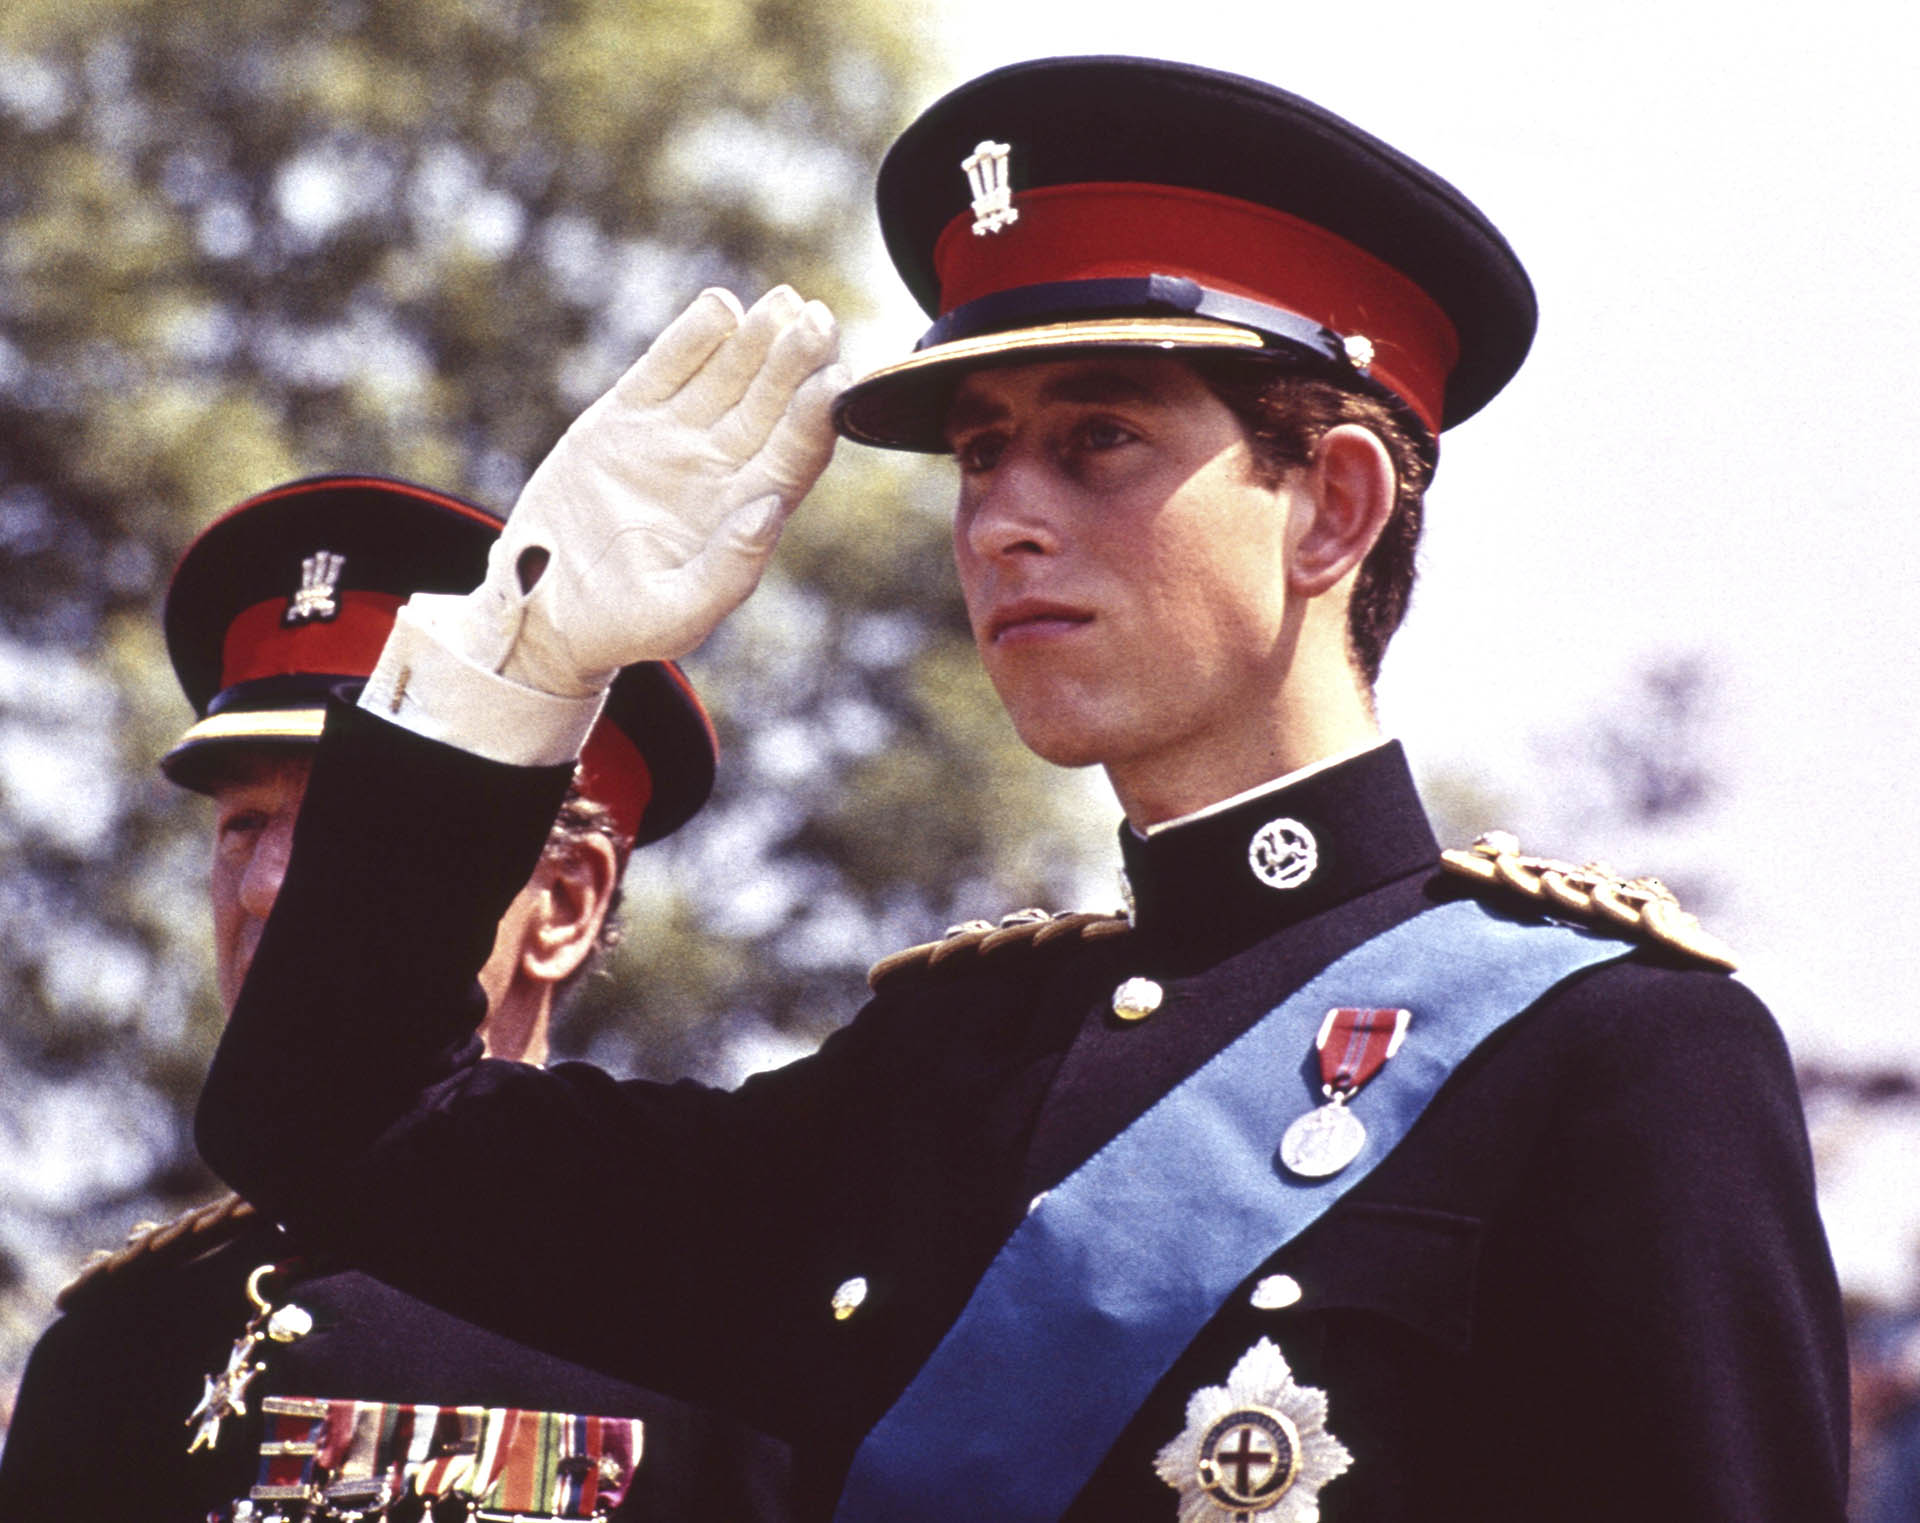 ARCHIVO - El Príncipe Carlos de Gran Bretaña, Príncipe de Gales, con el uniforme de Coronel en Jefe del Regimiento Real de Gales, saluda, en la presentación de Color del Regimiento, en el Castillo de Cardiff en Gales, el 11 de junio de 1969. (Foto AP, Archivo )
